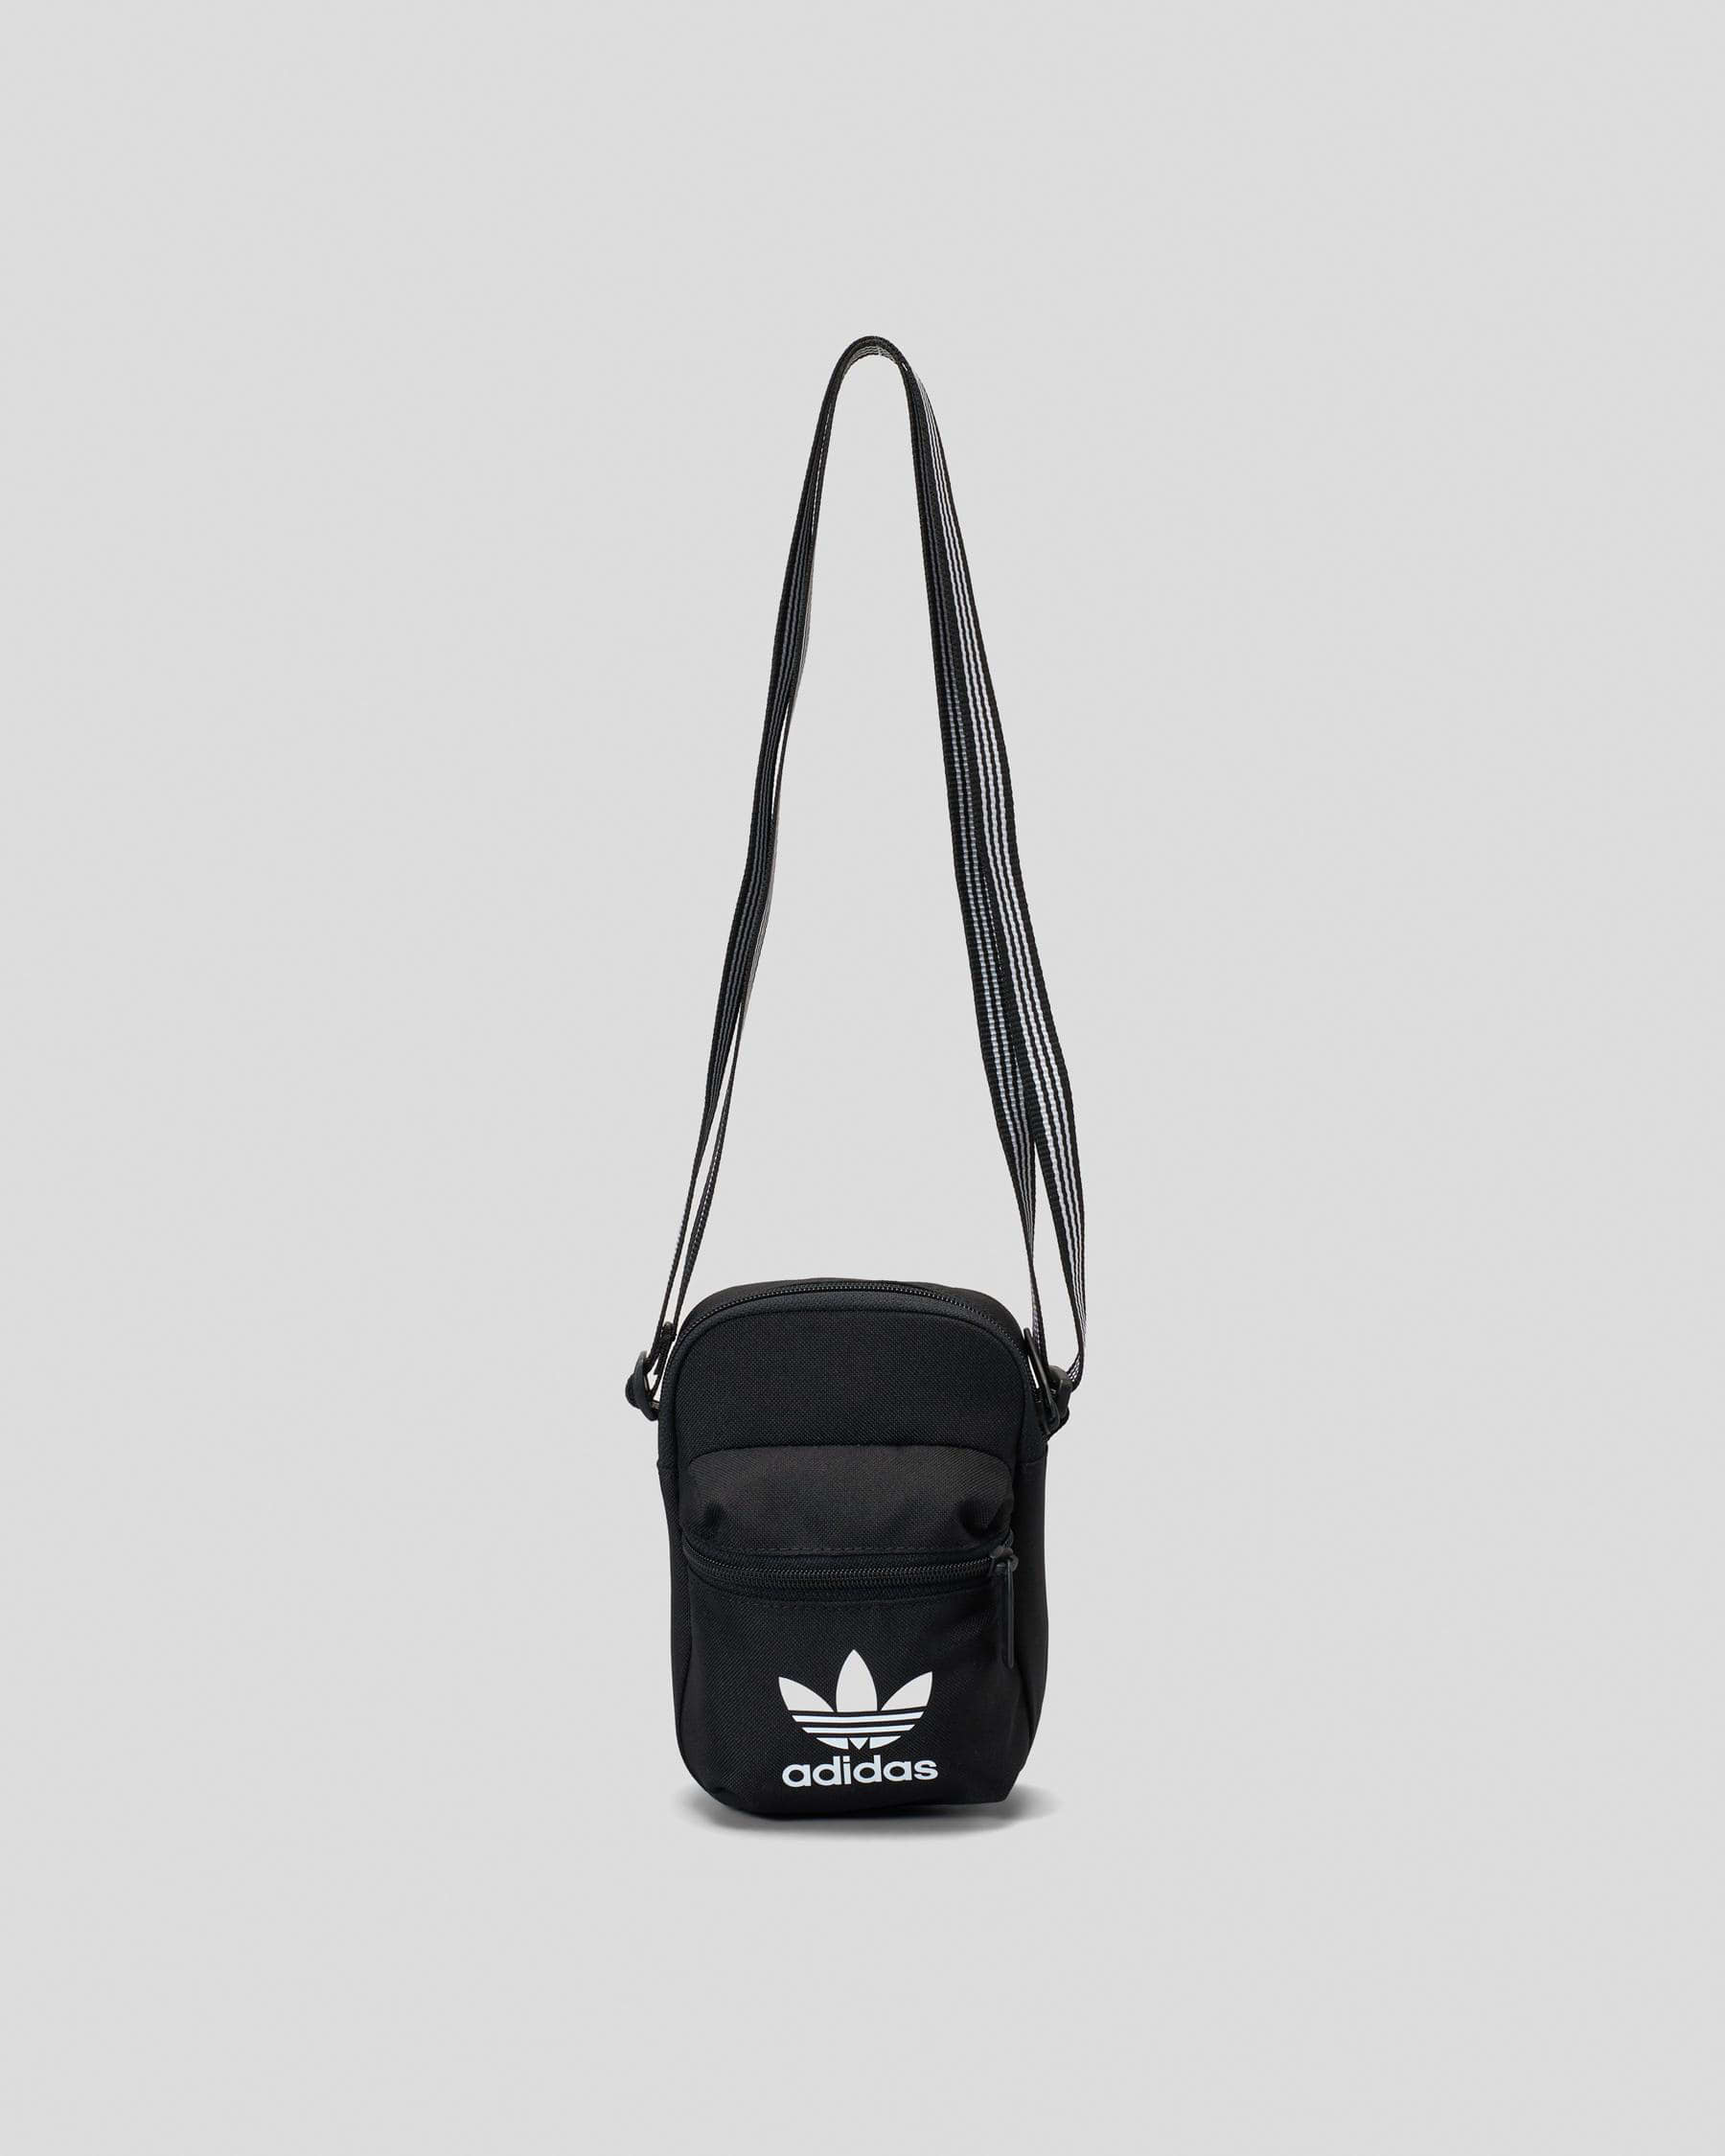 adidas Originals Clear Festival Crossbody Bag| Finish Line | Bags, Festival  crossbody bag, Crossbody bag